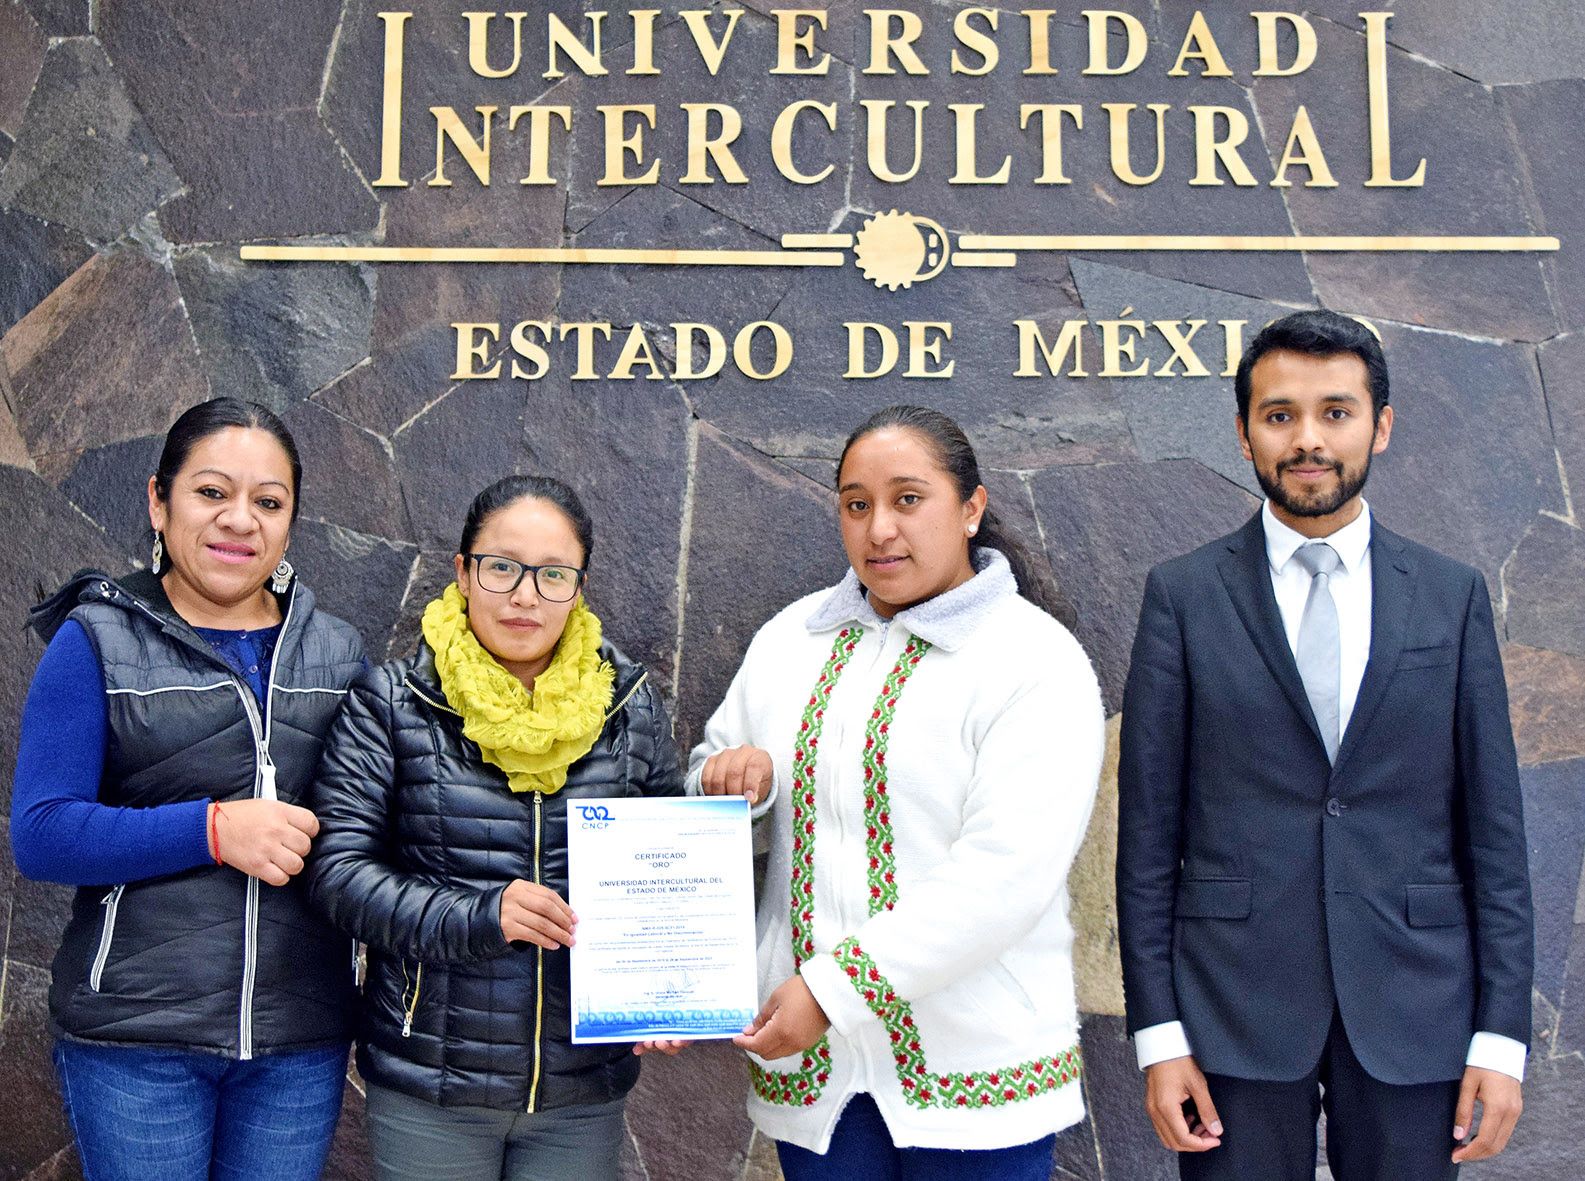 Universidad-Intercultural-certificación